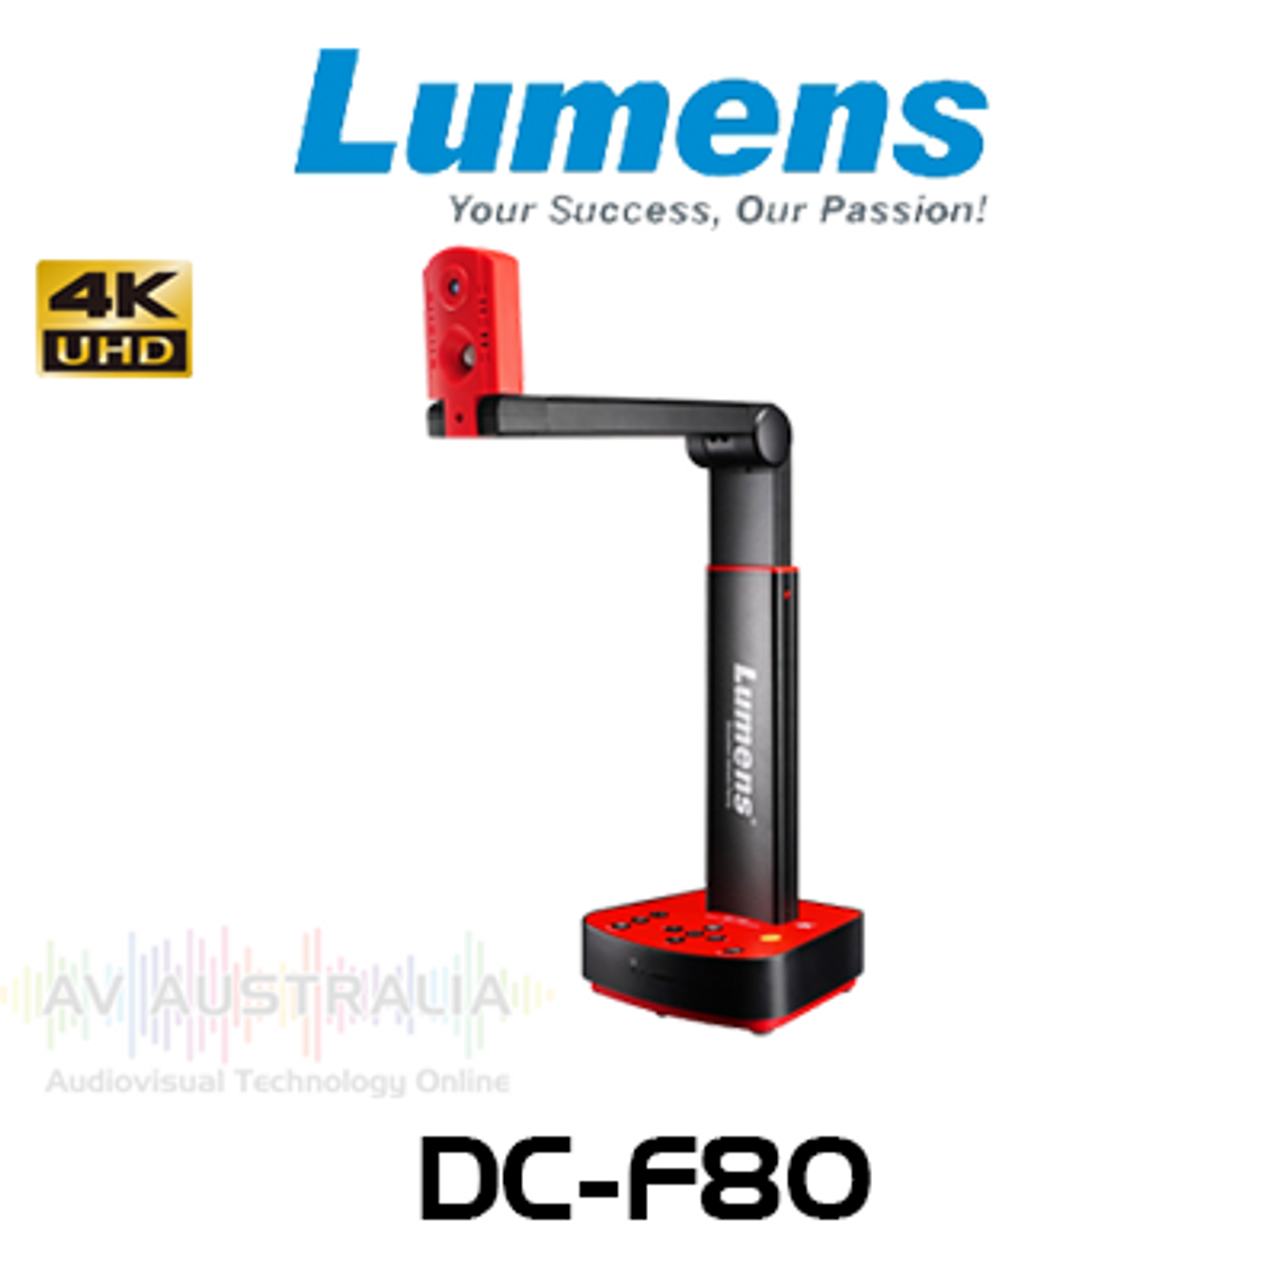 Lumens Ladibug DC-F80 4K USB & HDMI Document Camera